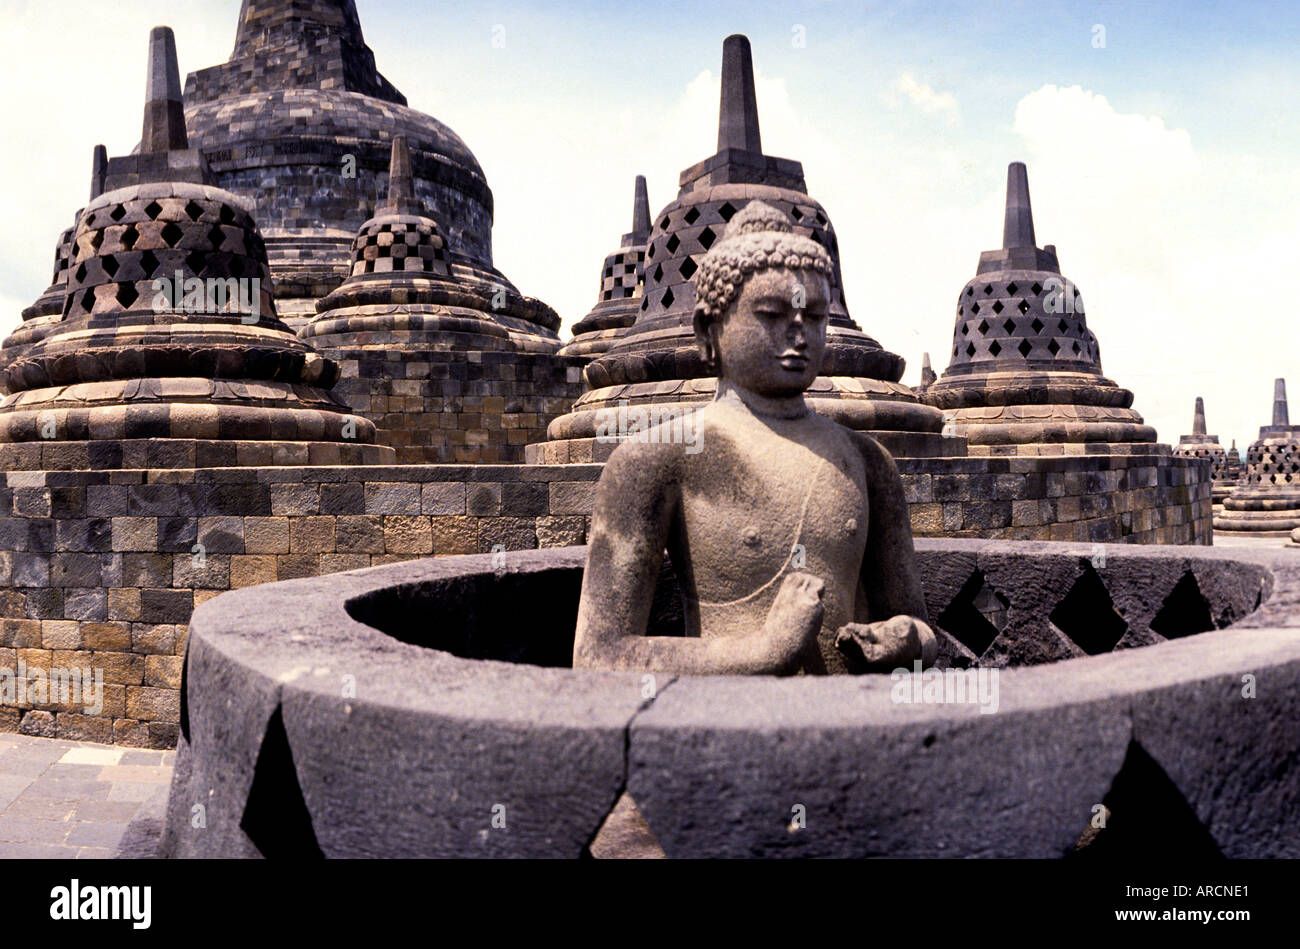 Java Indonesia Borobudur Buddhist Stupa Temple art Stock Photo